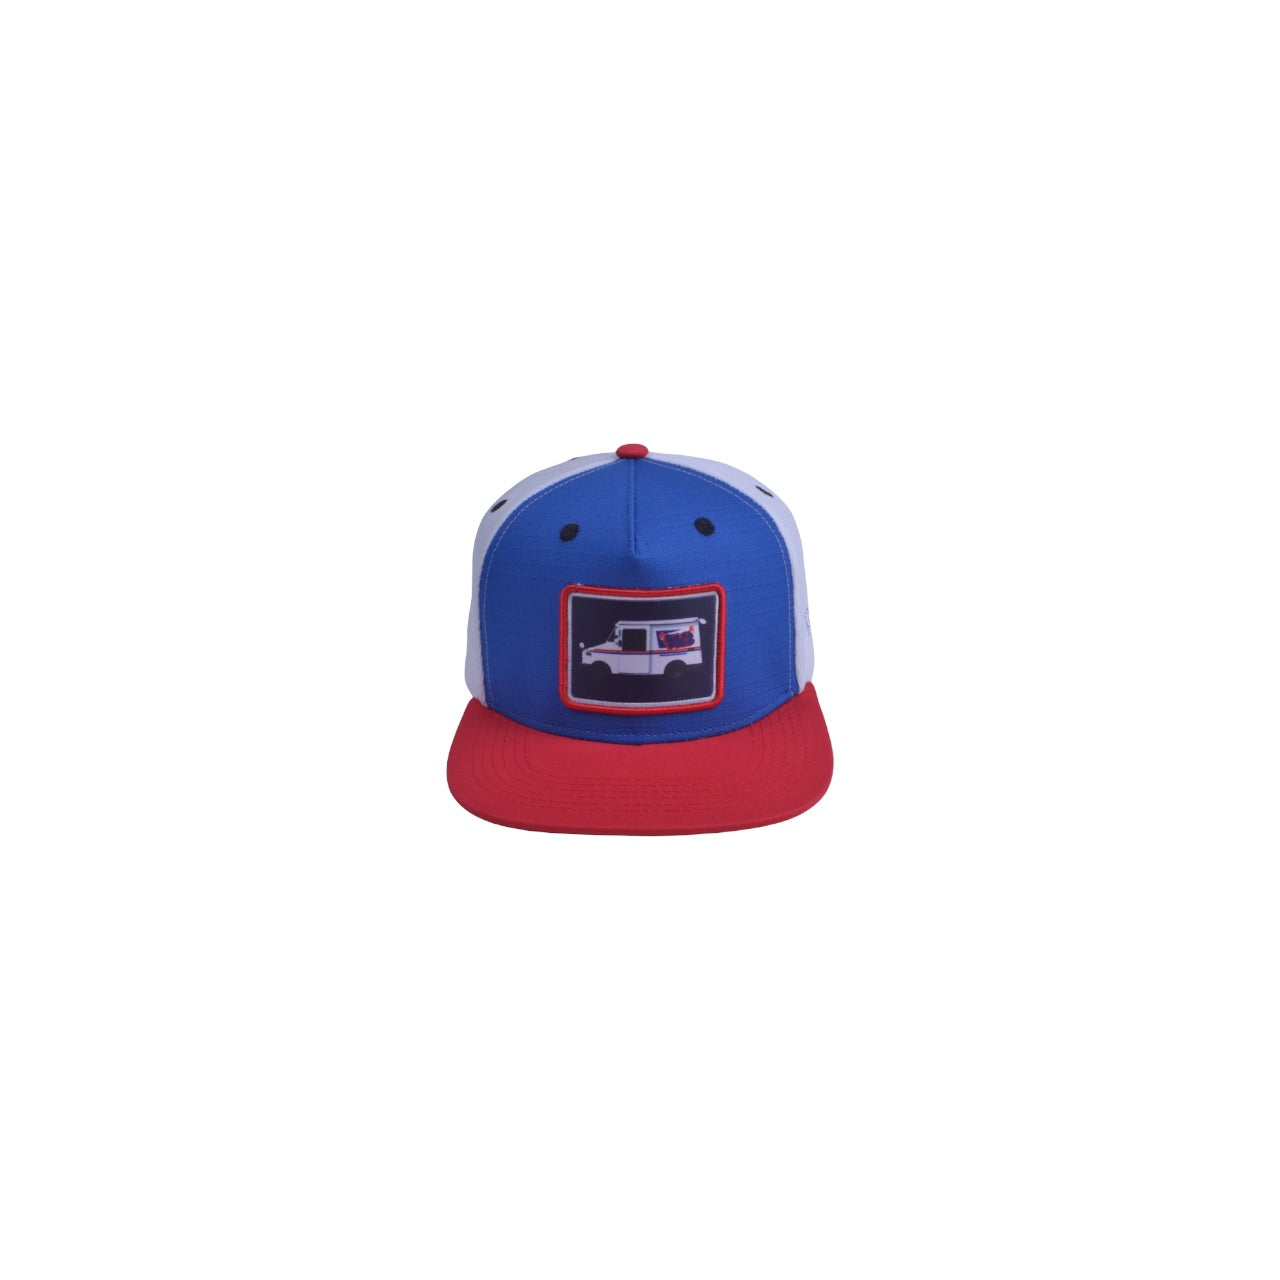 Dlab “Guaguita” Premium Trucker Hat